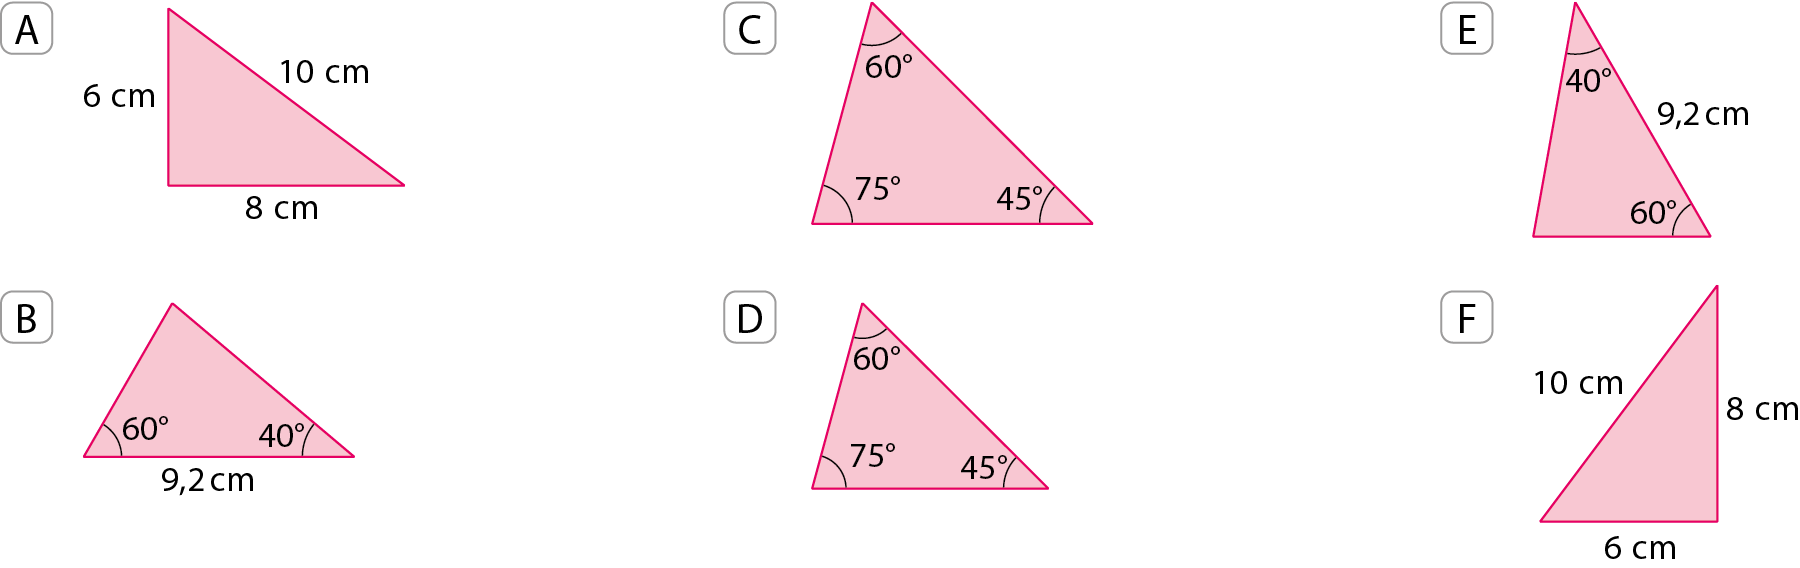 Figuras geométricas. A. Triângulo com as medidas: 6 centímetros, 10 centímetros, 8 centímetros.
B. Triângulo com ângulos internos medindo 40 graus e 60 graus, o lado entre esses dois ângulos mede 9 vírgula 2 centímetros.
C. Triângulo com ângulos internos medindo 60 graus, 75 graus e 45 graus.
D. Triângulo com ângulos internos medindo 60 graus, 75 graus e 45 graus.
E. Triângulo com ângulos internos medindo 60 graus e 40 graus, o lado entre esses dois ângulos mede 9 vírgula 2 centímetros.
F. Triângulo com lados medindo: 6 centímetros, 10 centímetros, 8 centímetros.